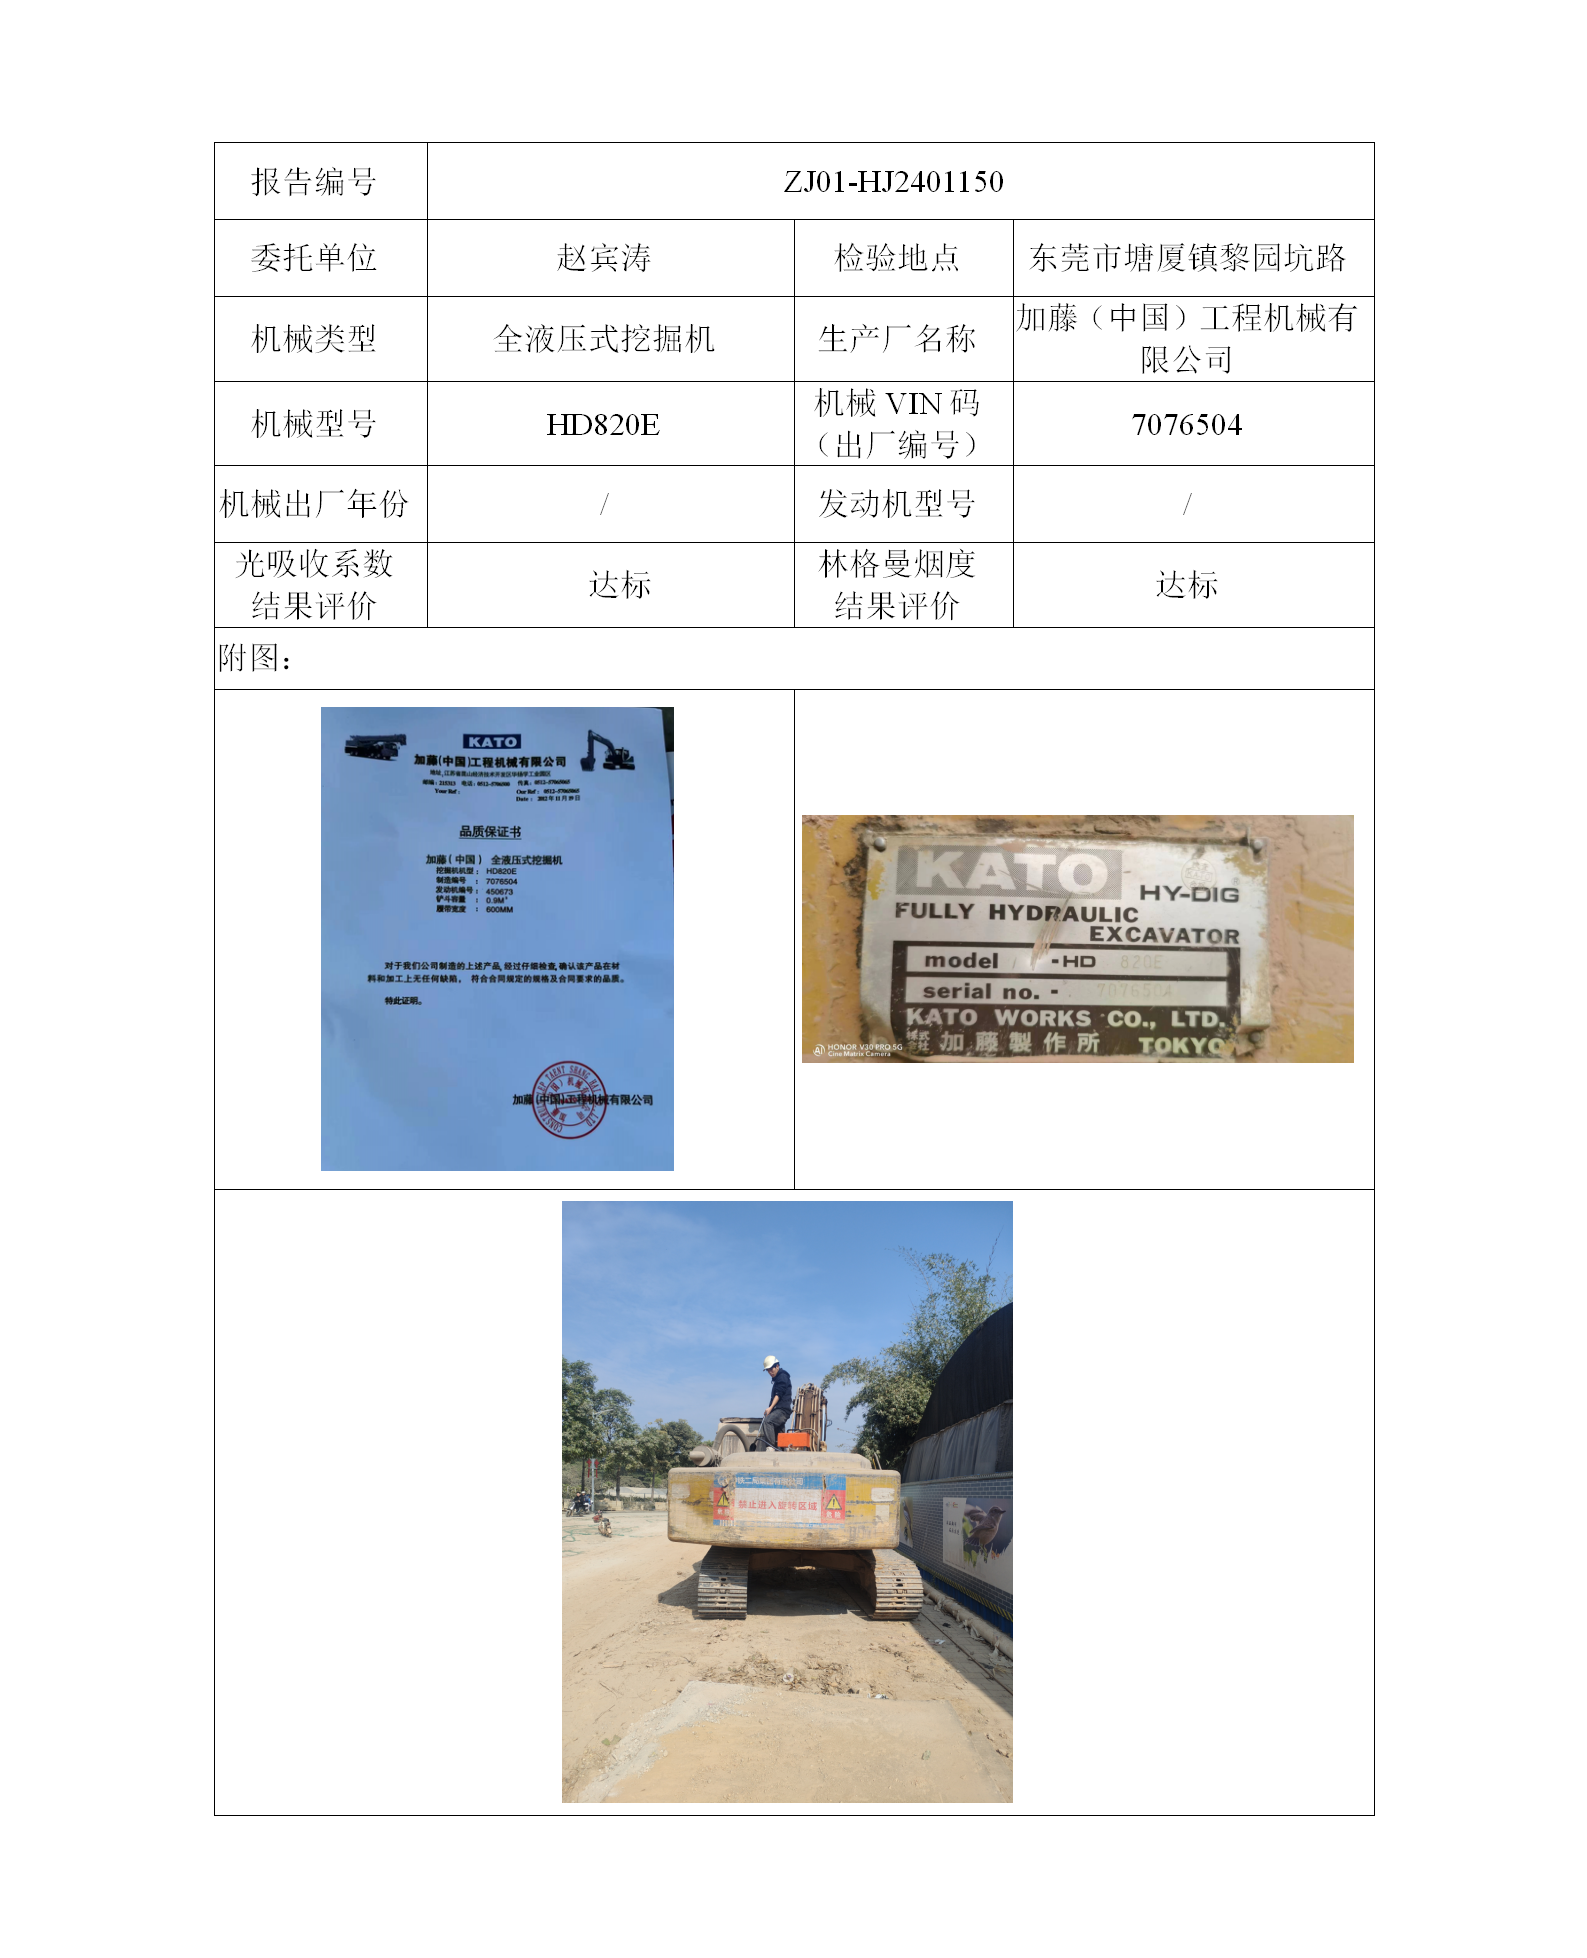 委托-ZJ01-HJ2401150赵宾涛的非道路机械设备二维码-张伟仪_01.png